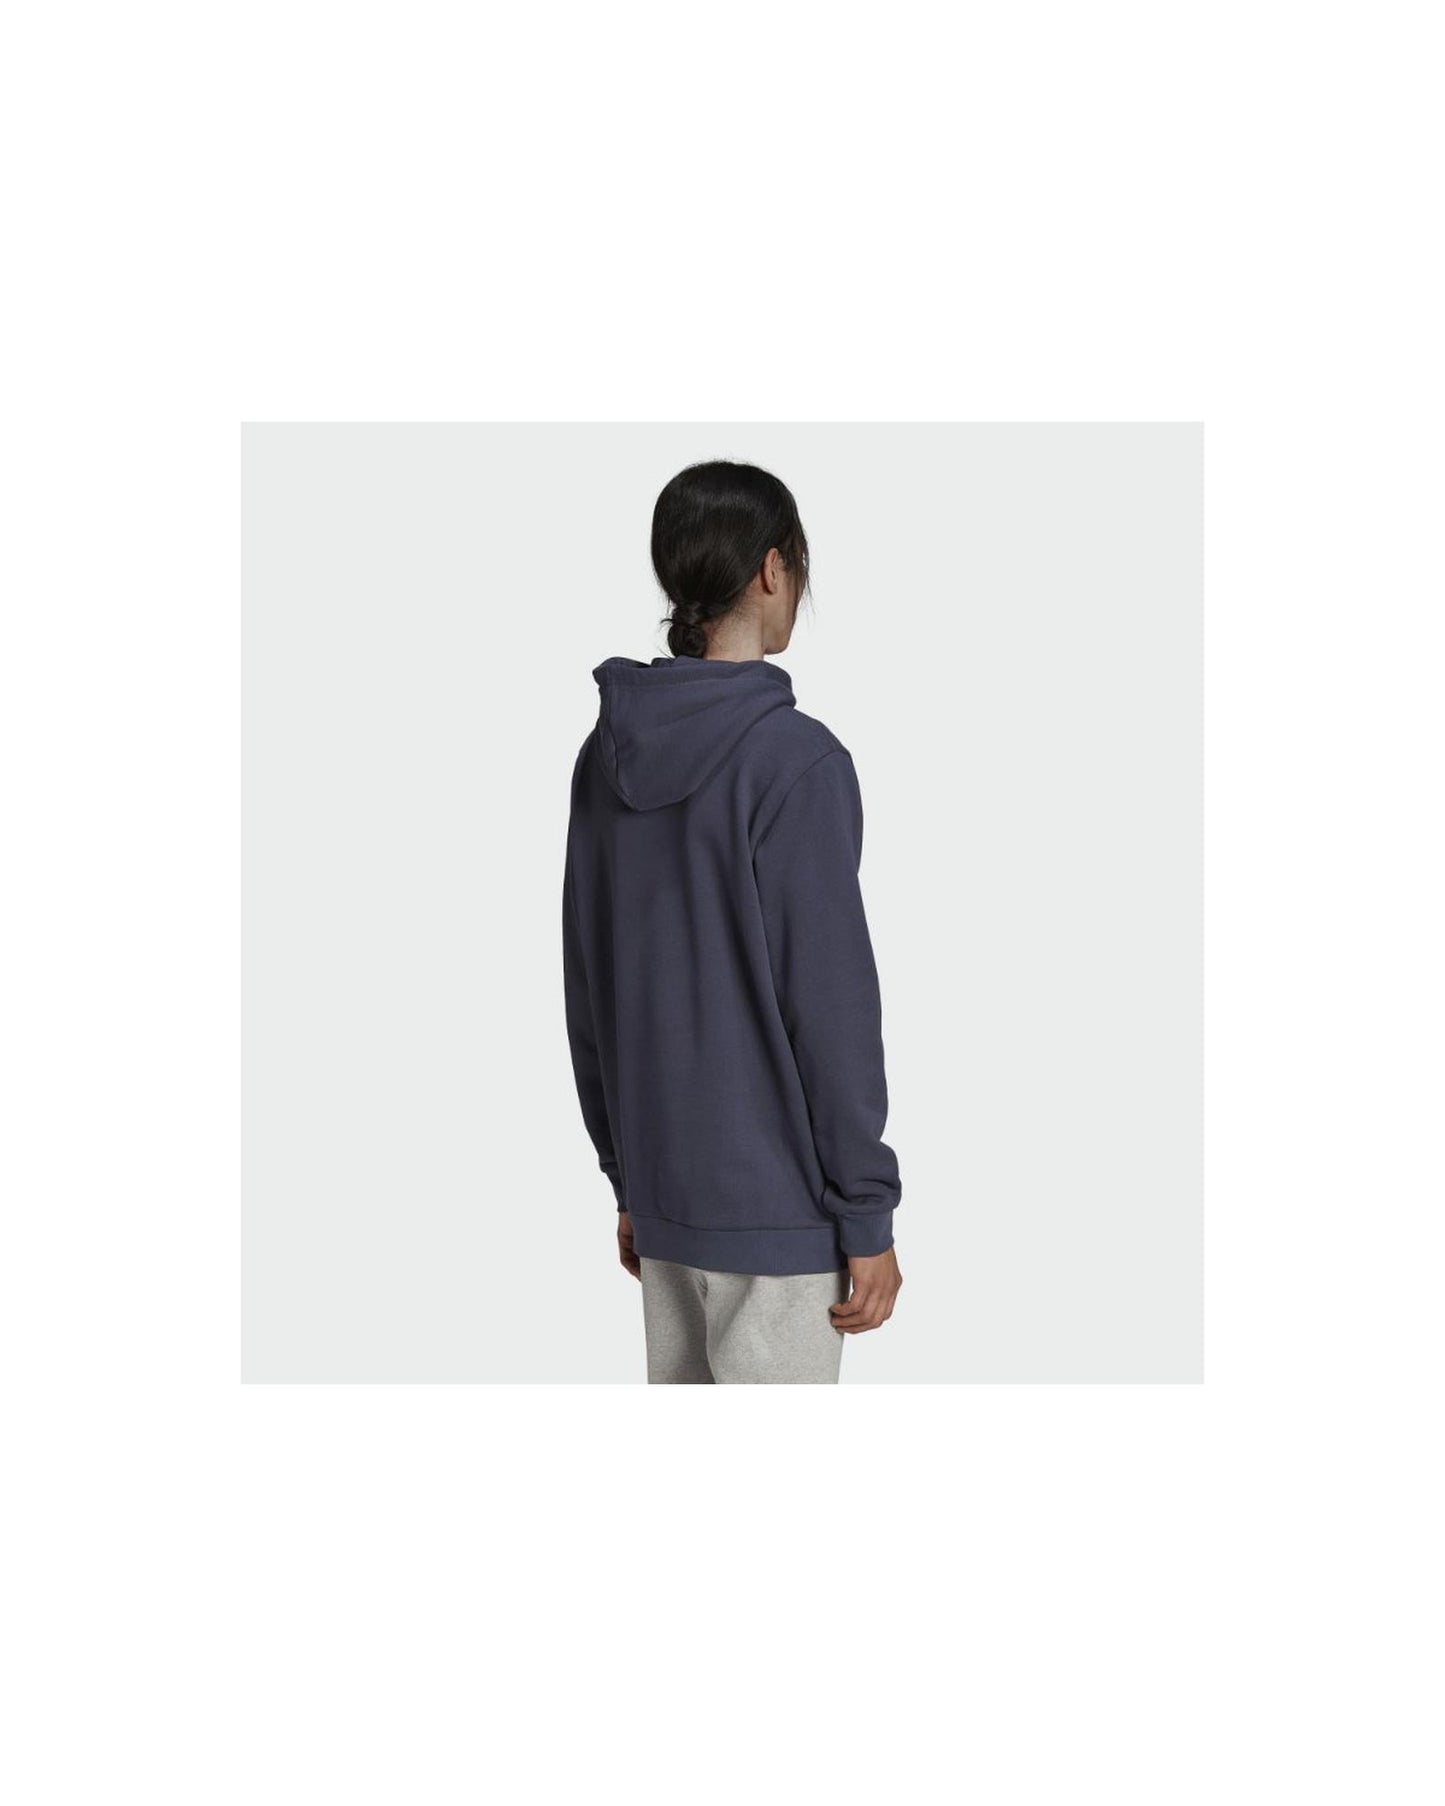 Adidas hoodie - M